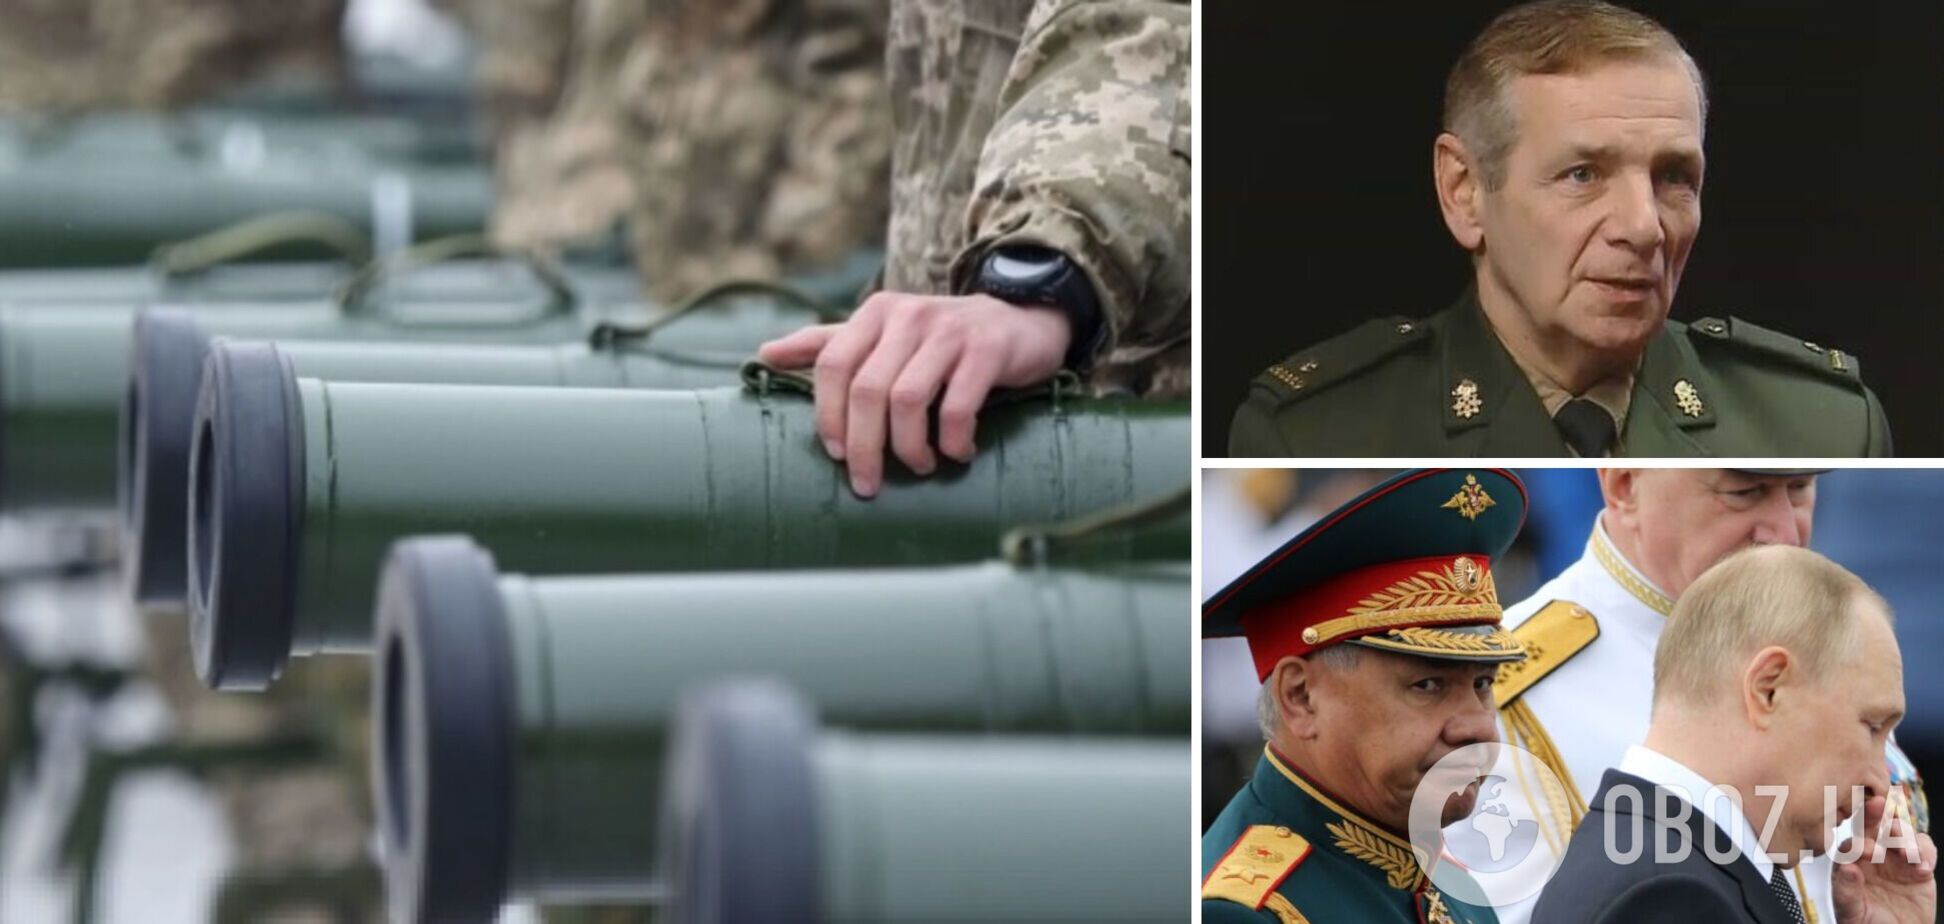 Украина может победить в этом году, применение ядерного оружия будет стоить Путину жизни. Интервью с майором Гетьманом